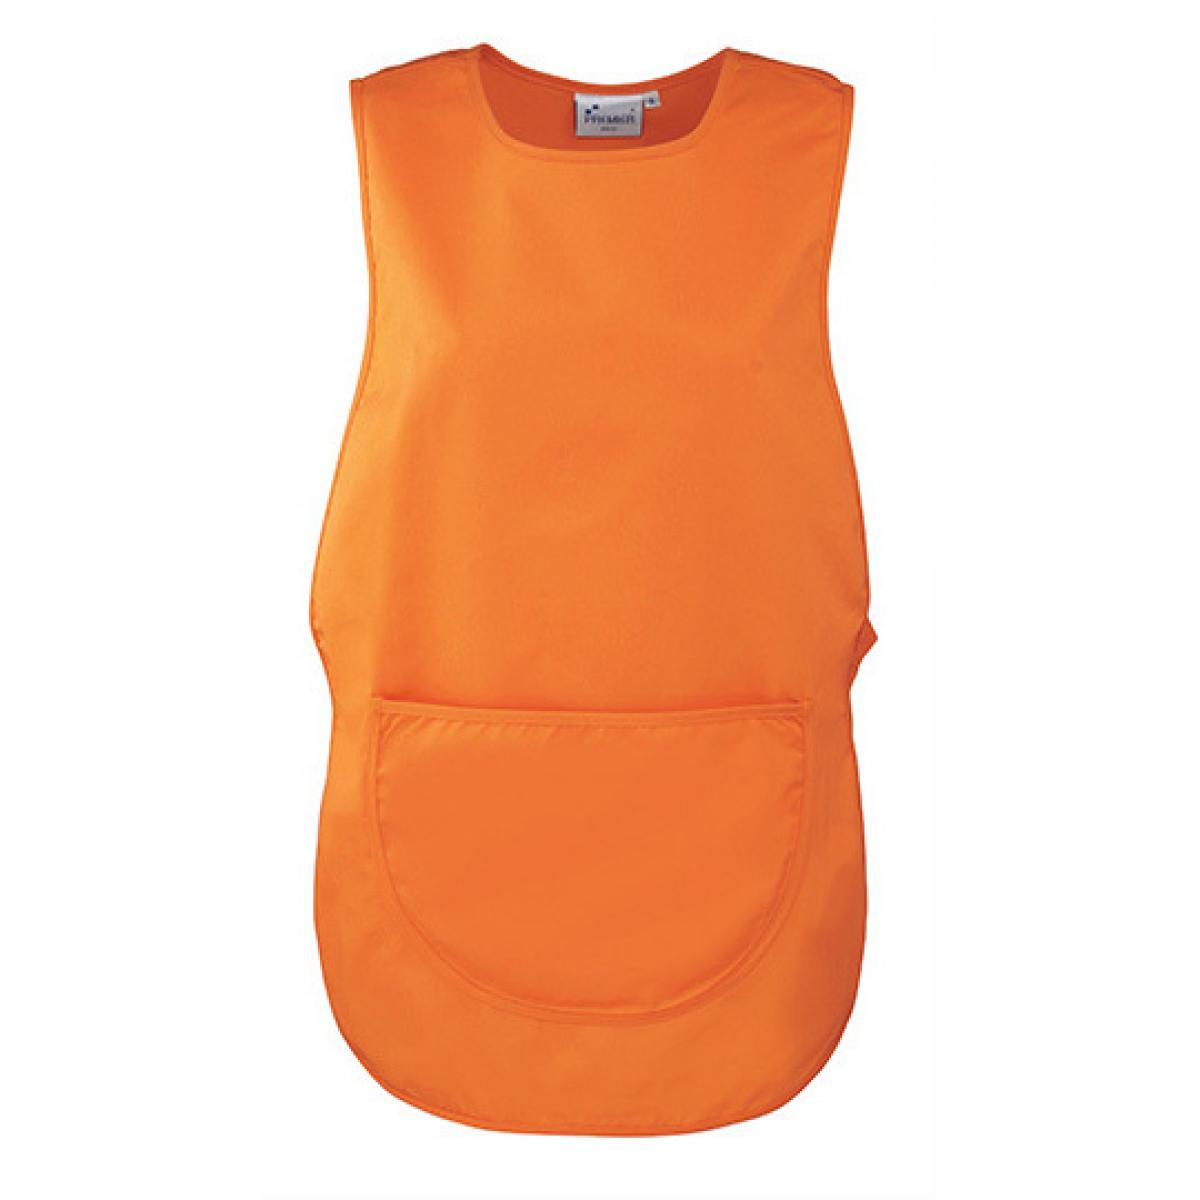 Hersteller: Premier Workwear Herstellernummer: PR171 Artikelbezeichnung: Women`s Pocket Tabard - Waschbar bis 60 °C Farbe: Orange (ca. Pantone 1655)